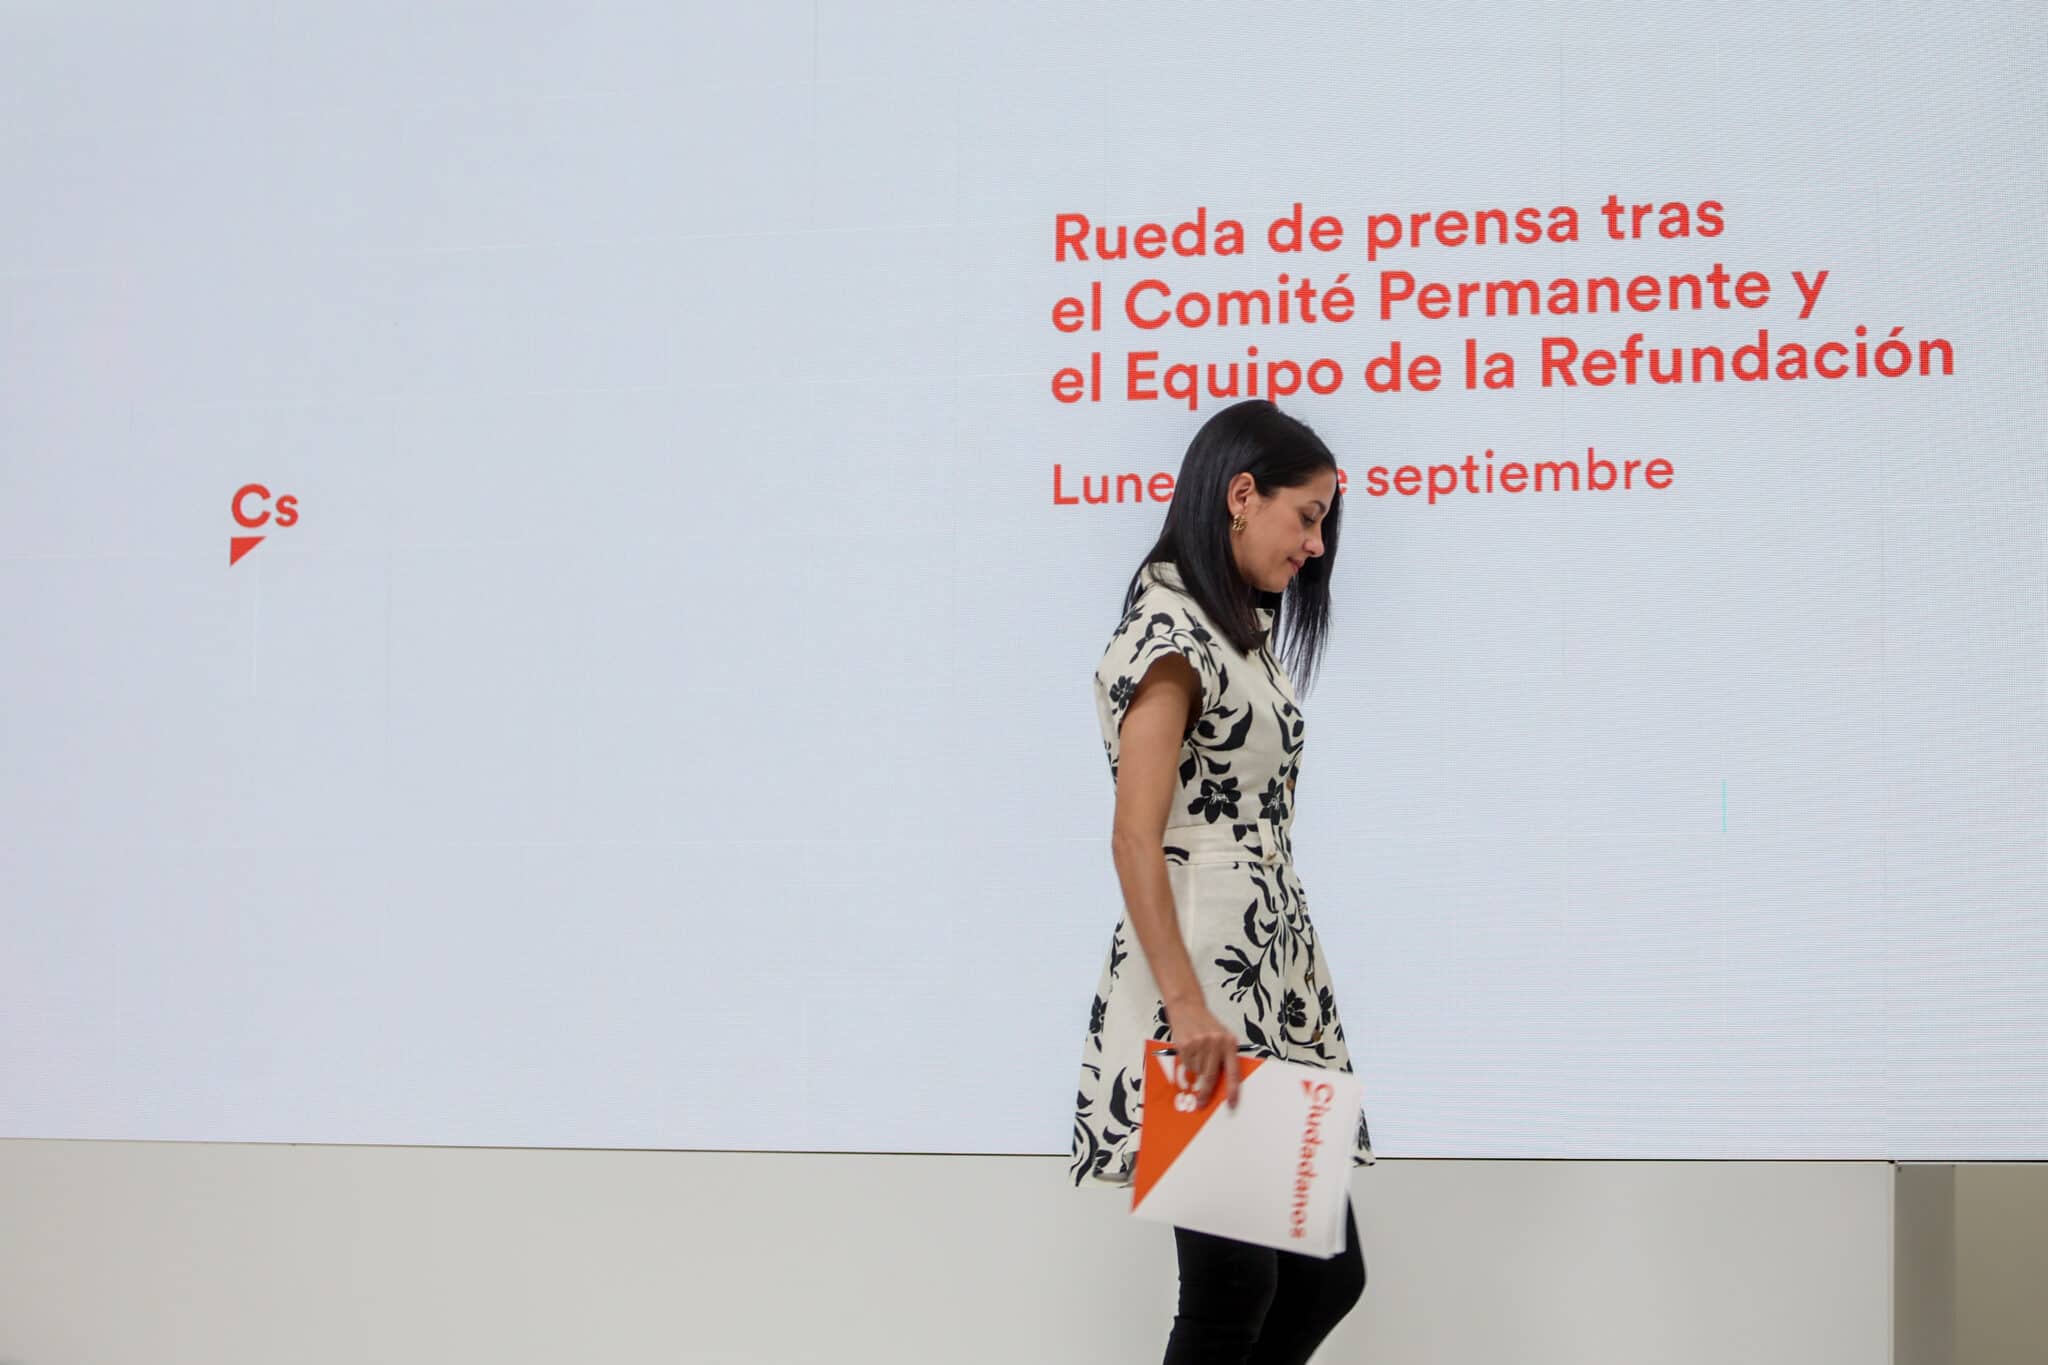 La presidenta de Ciudadanos, Inés Arrimadas, a su salida de una rueda de prensa, después de una reunión conjunta del Comité Permanente y el Equipo de Ciudadanos, en la sede nacional